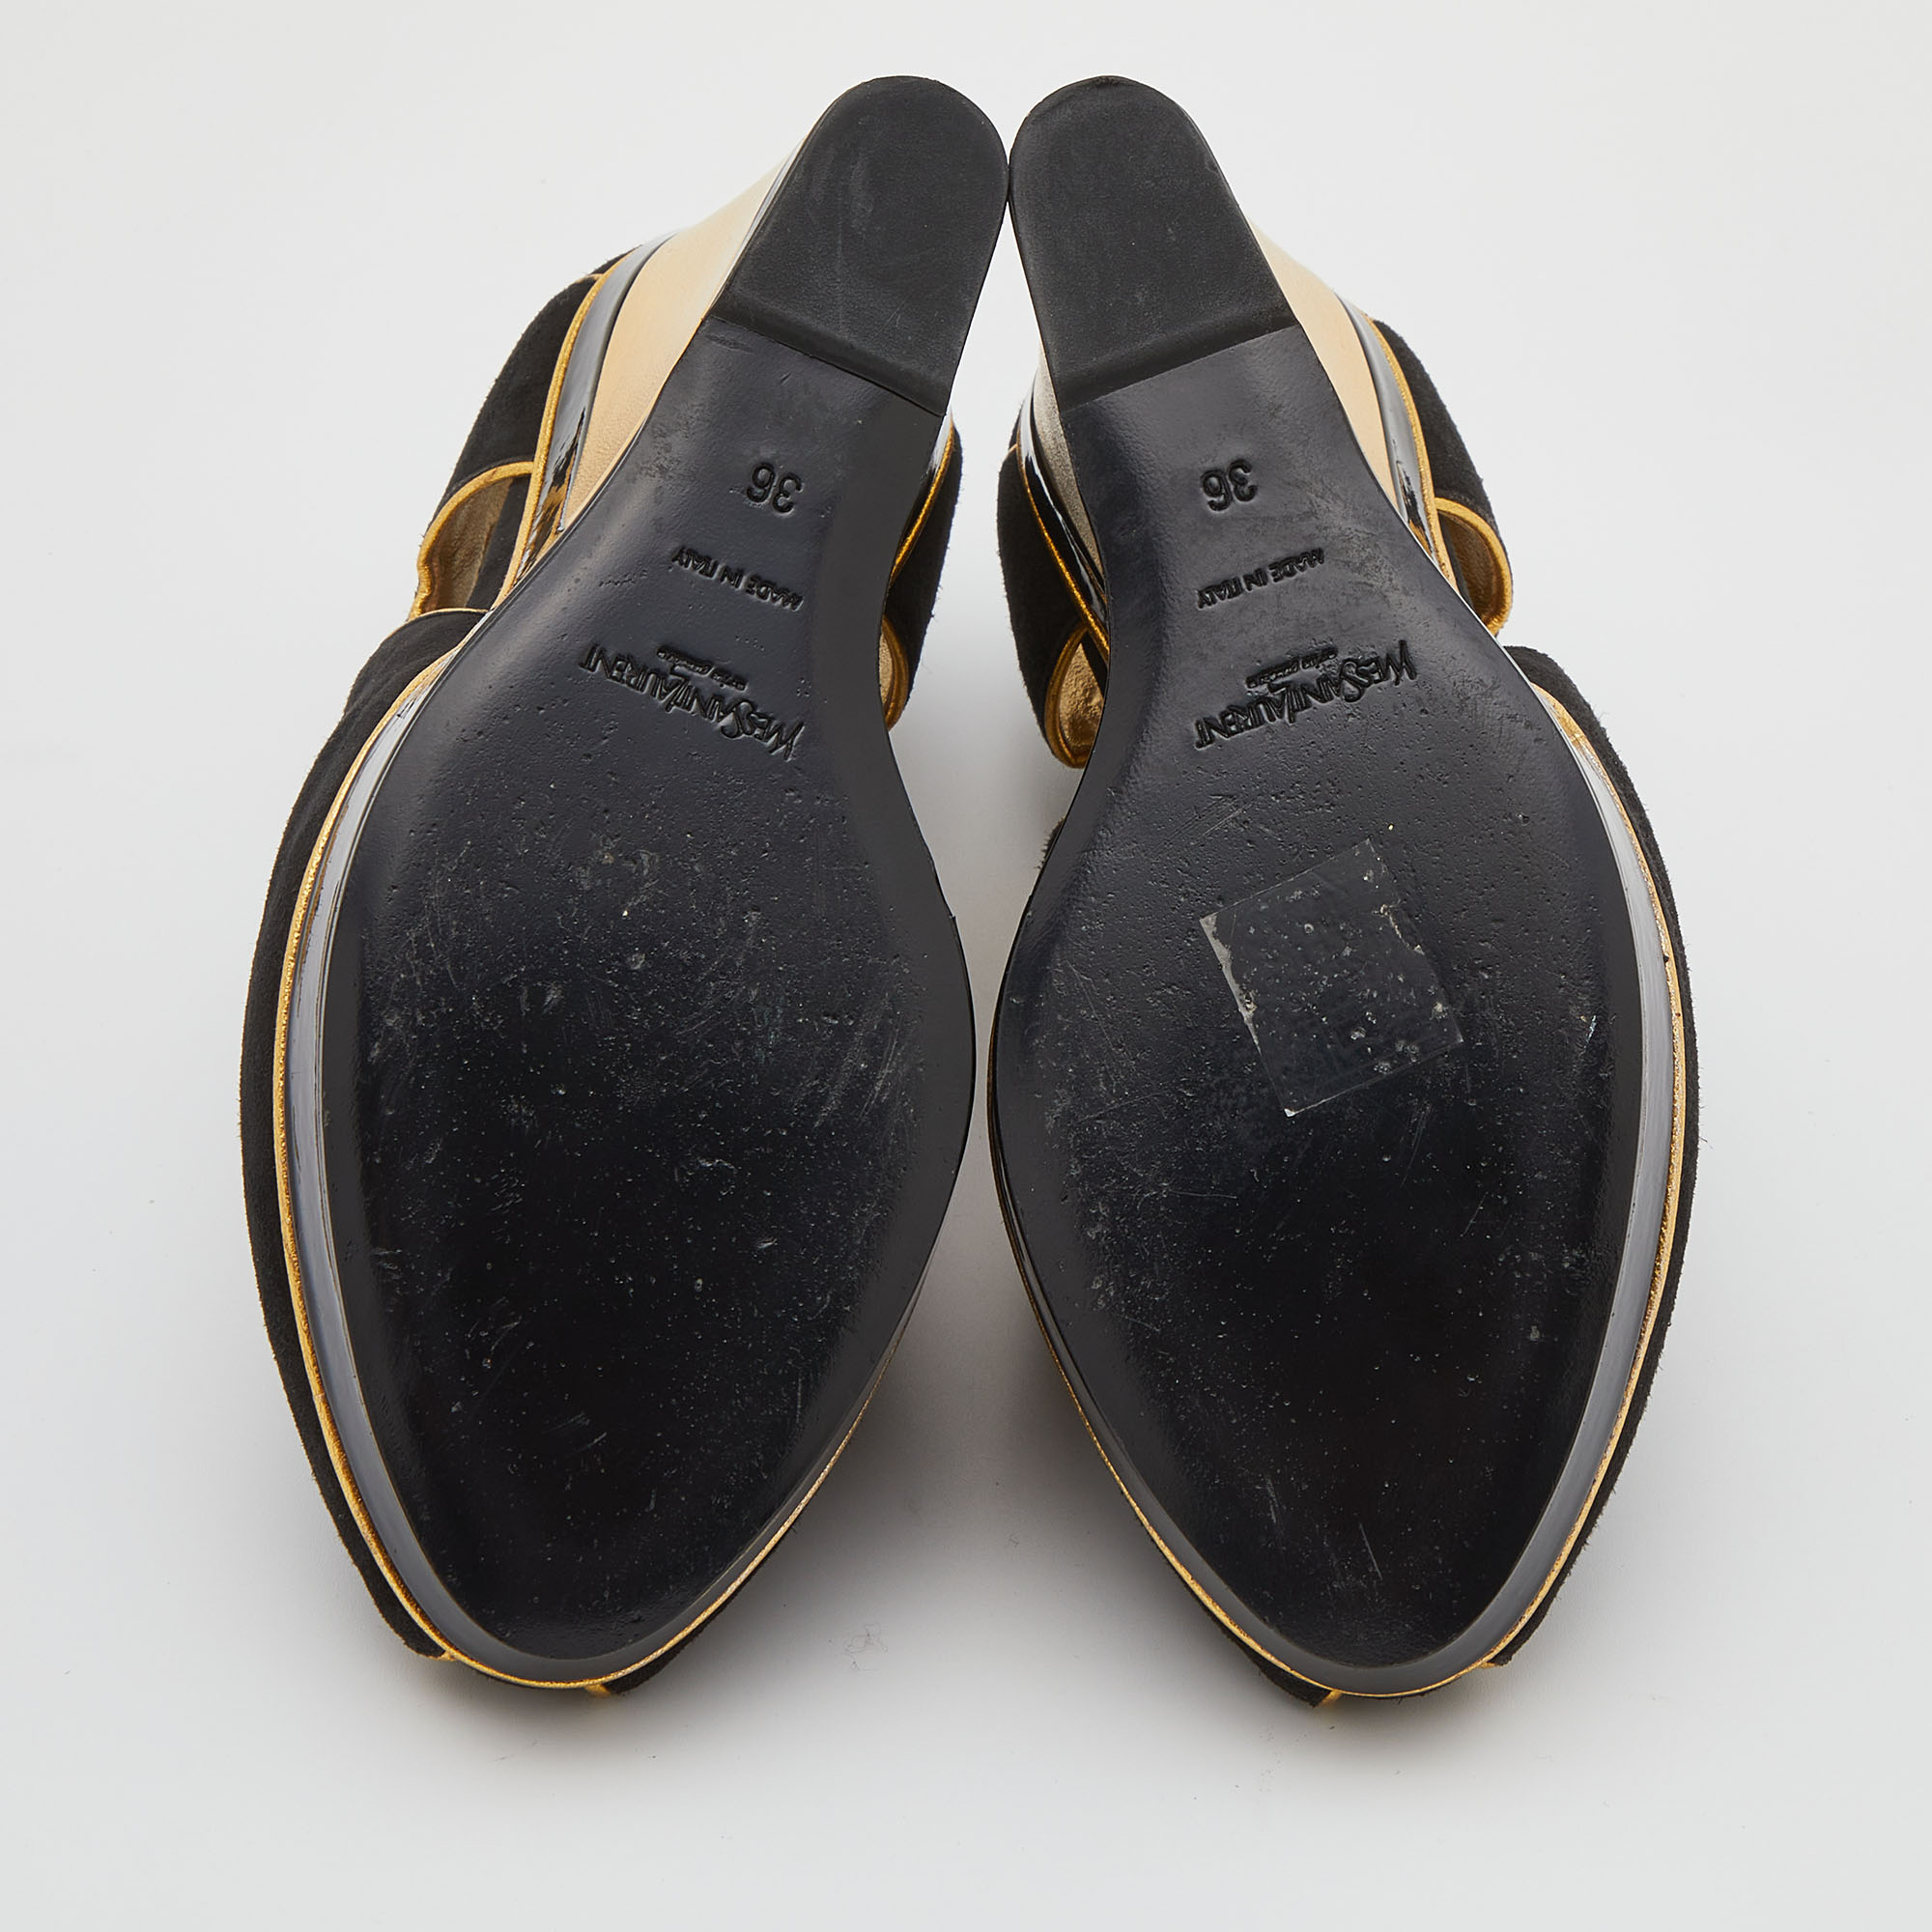 Yves Saint Laurent Black/Gold Cut-Out Suede Peep Toe Platform Wedge Pumps Size 36